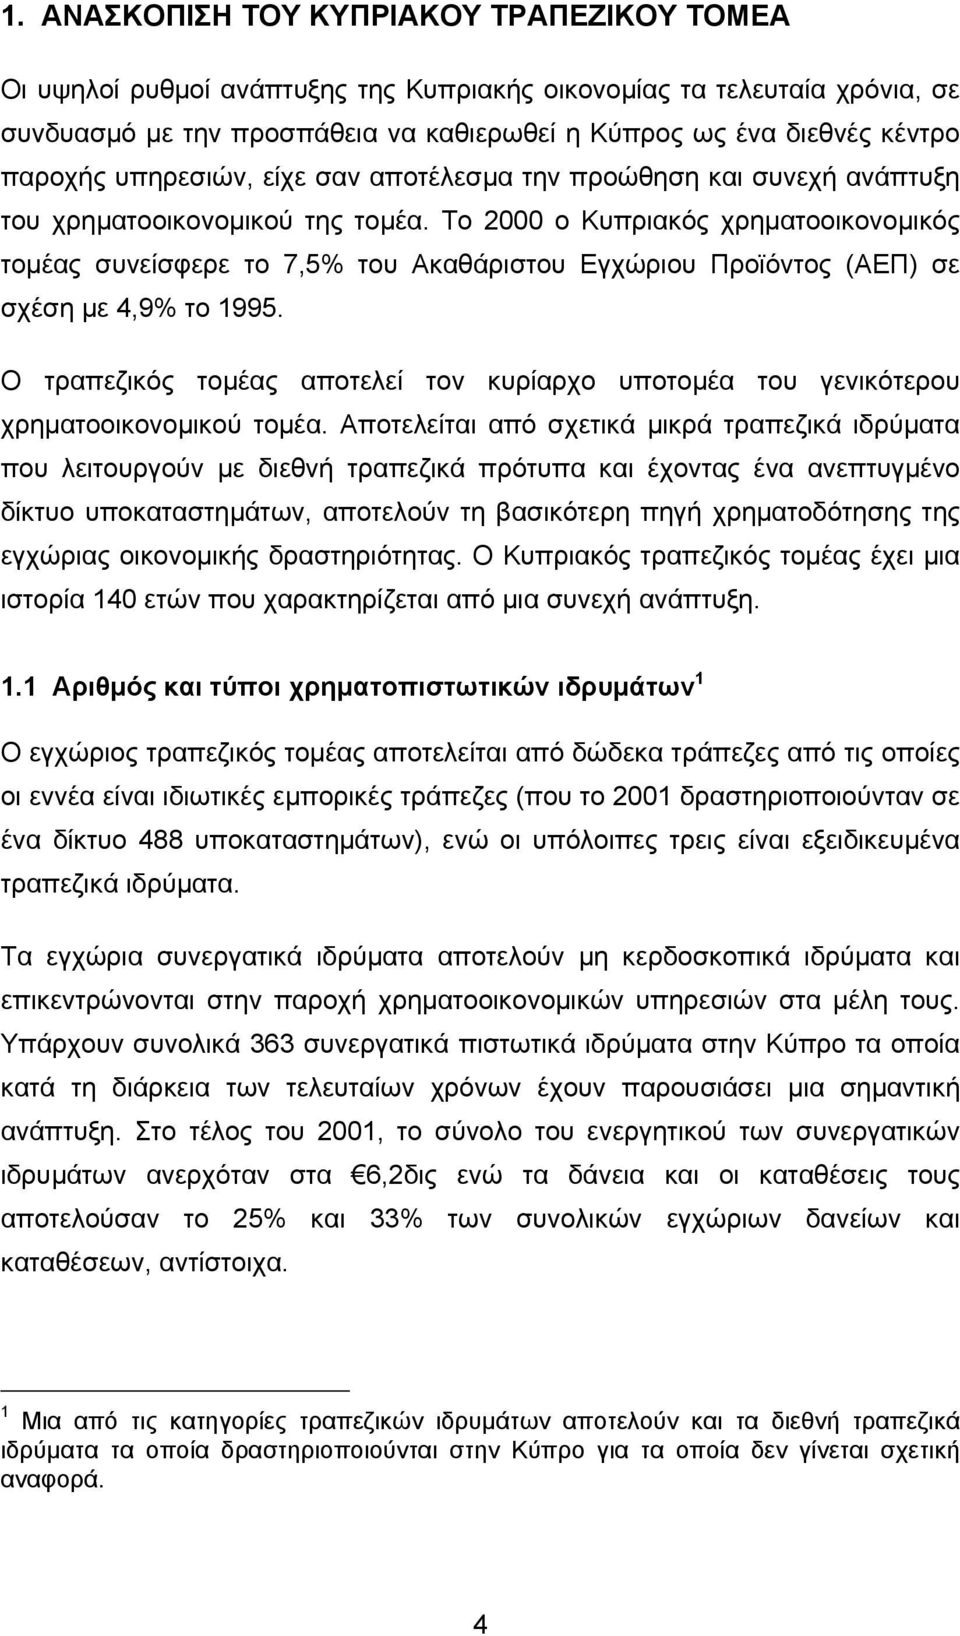 Το 2000 ο Κυπριακός χρηµατοοικονοµικός τοµέας συνείσφερε το 7,5% του Ακαθάριστου Εγχώριου Προϊόντος (ΑΕΠ) σε σχέση µε 4,9% το 1995.